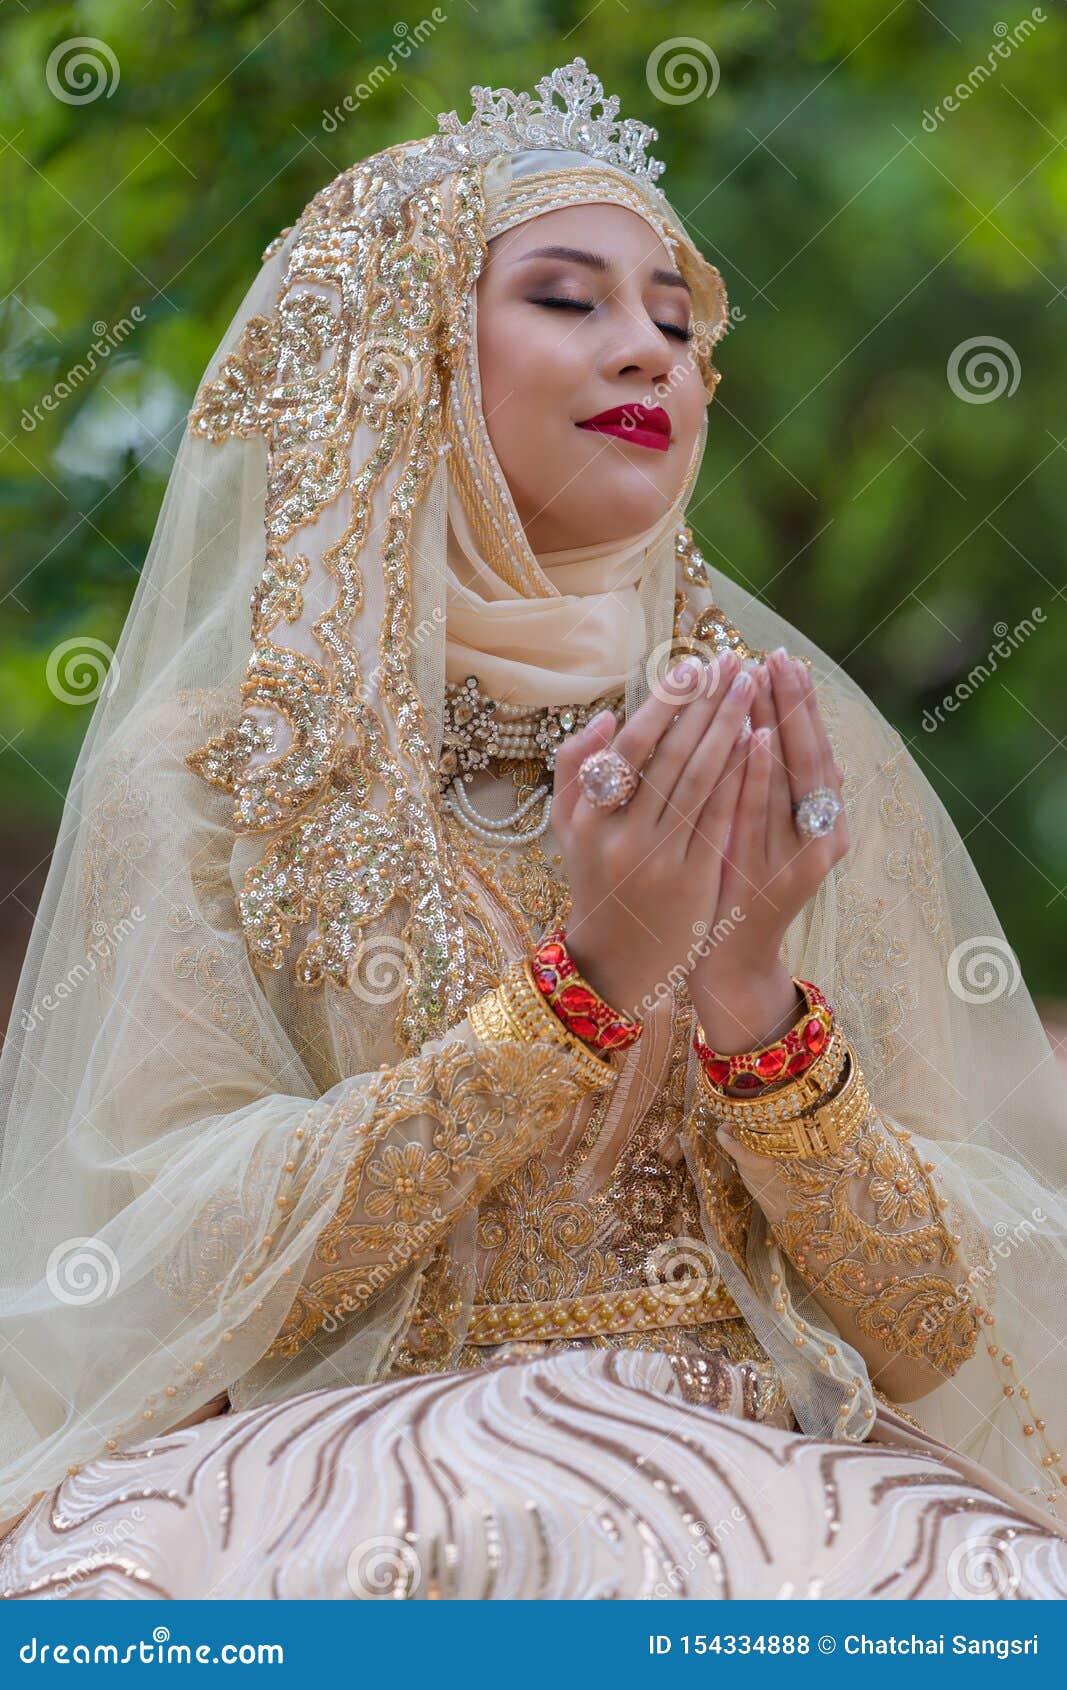 Premium Photo | Portrait muslim bride posing